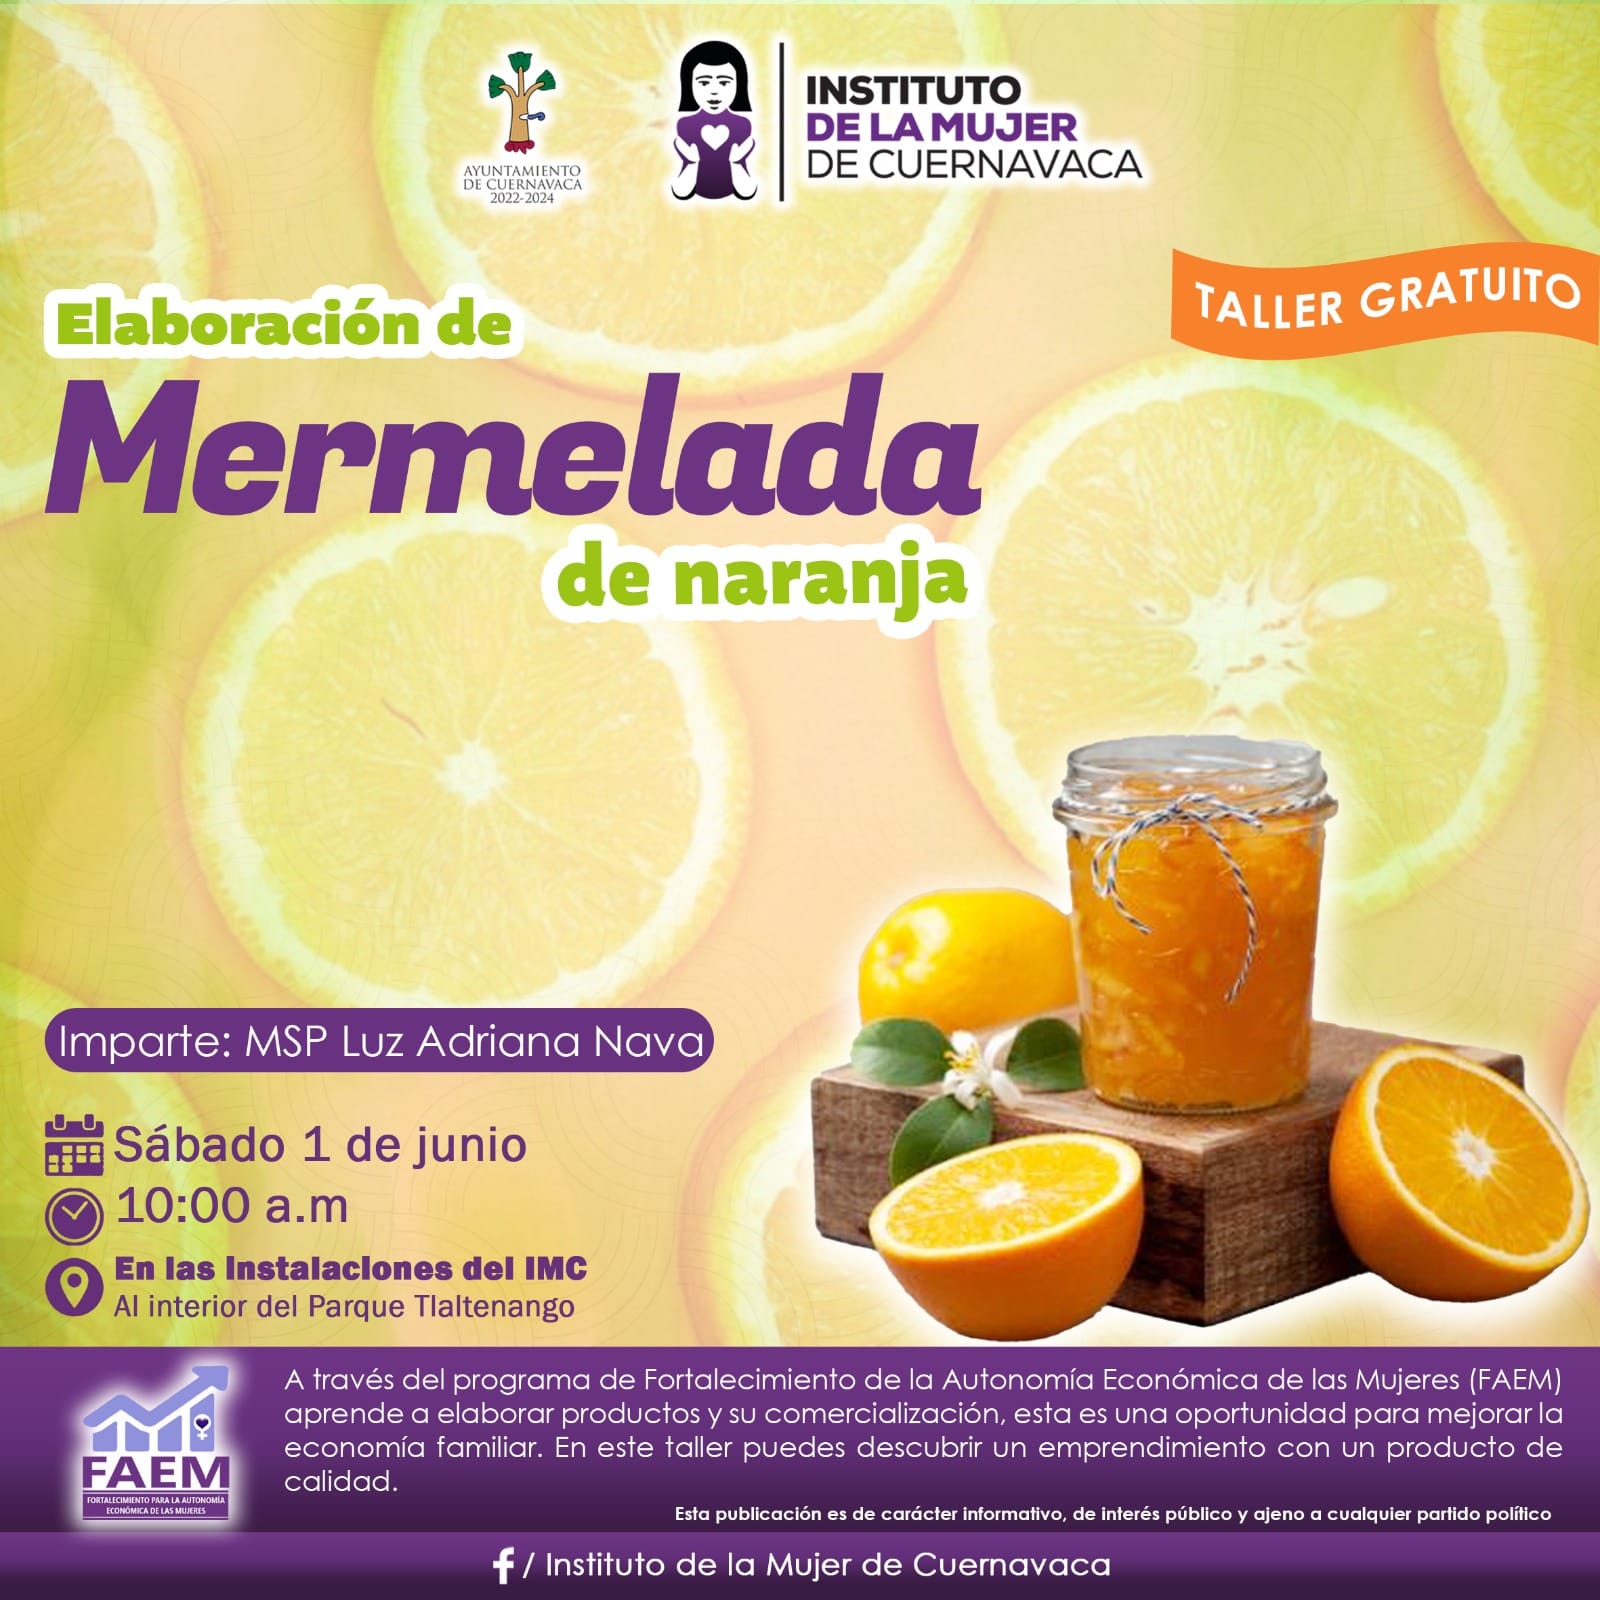 Taller de elaboración de mermelada de naranja - Instituto de la Mujer de Cuernavaca